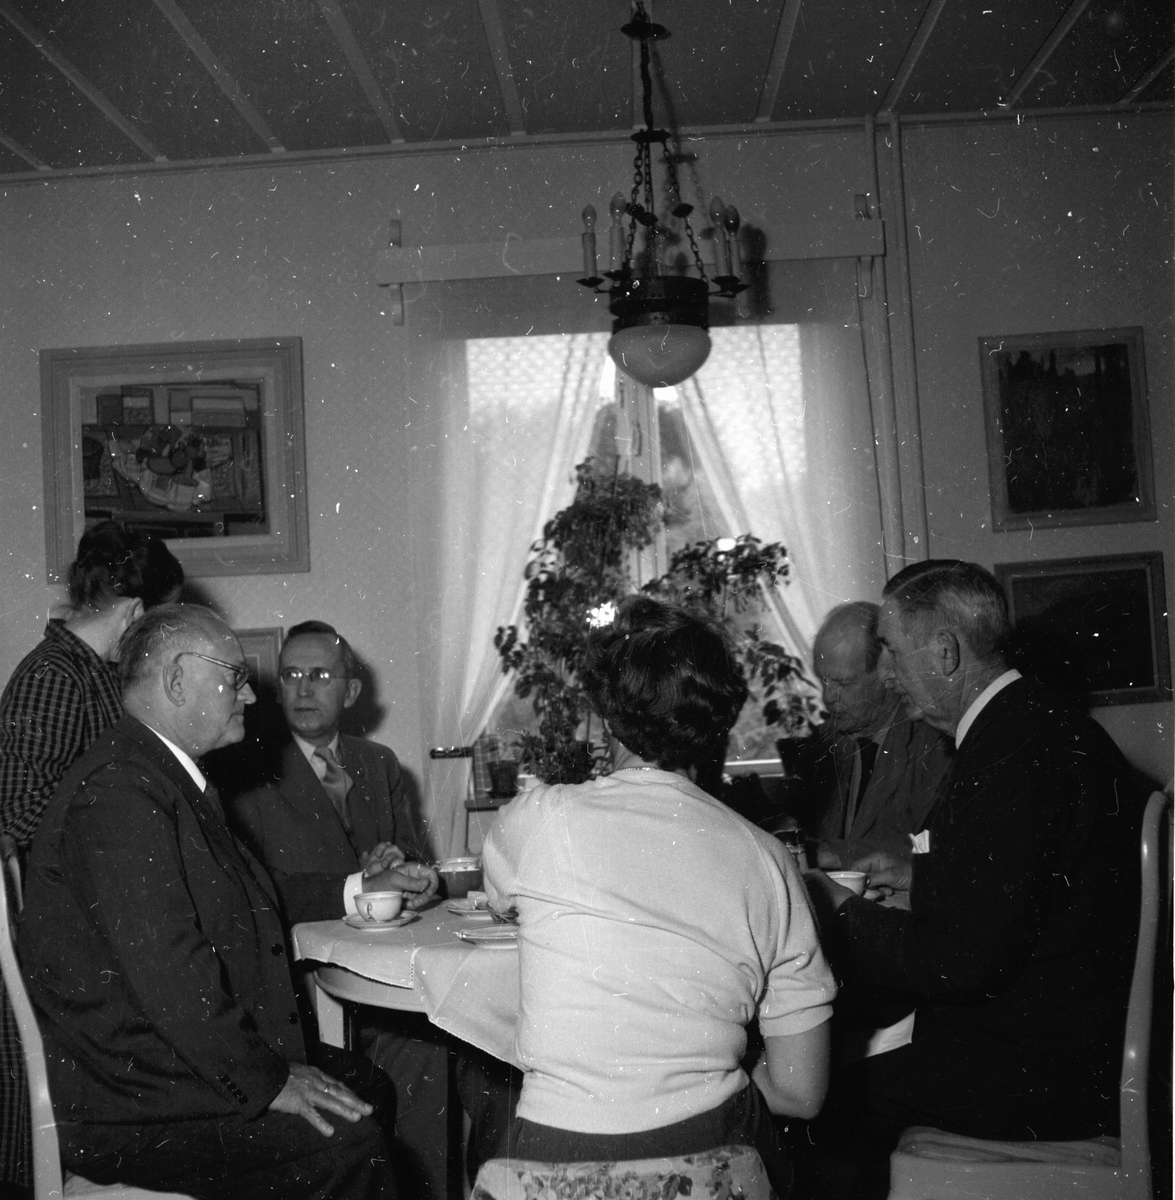 Ärkebiskopsbesök i Sörbo.
15/9 1959